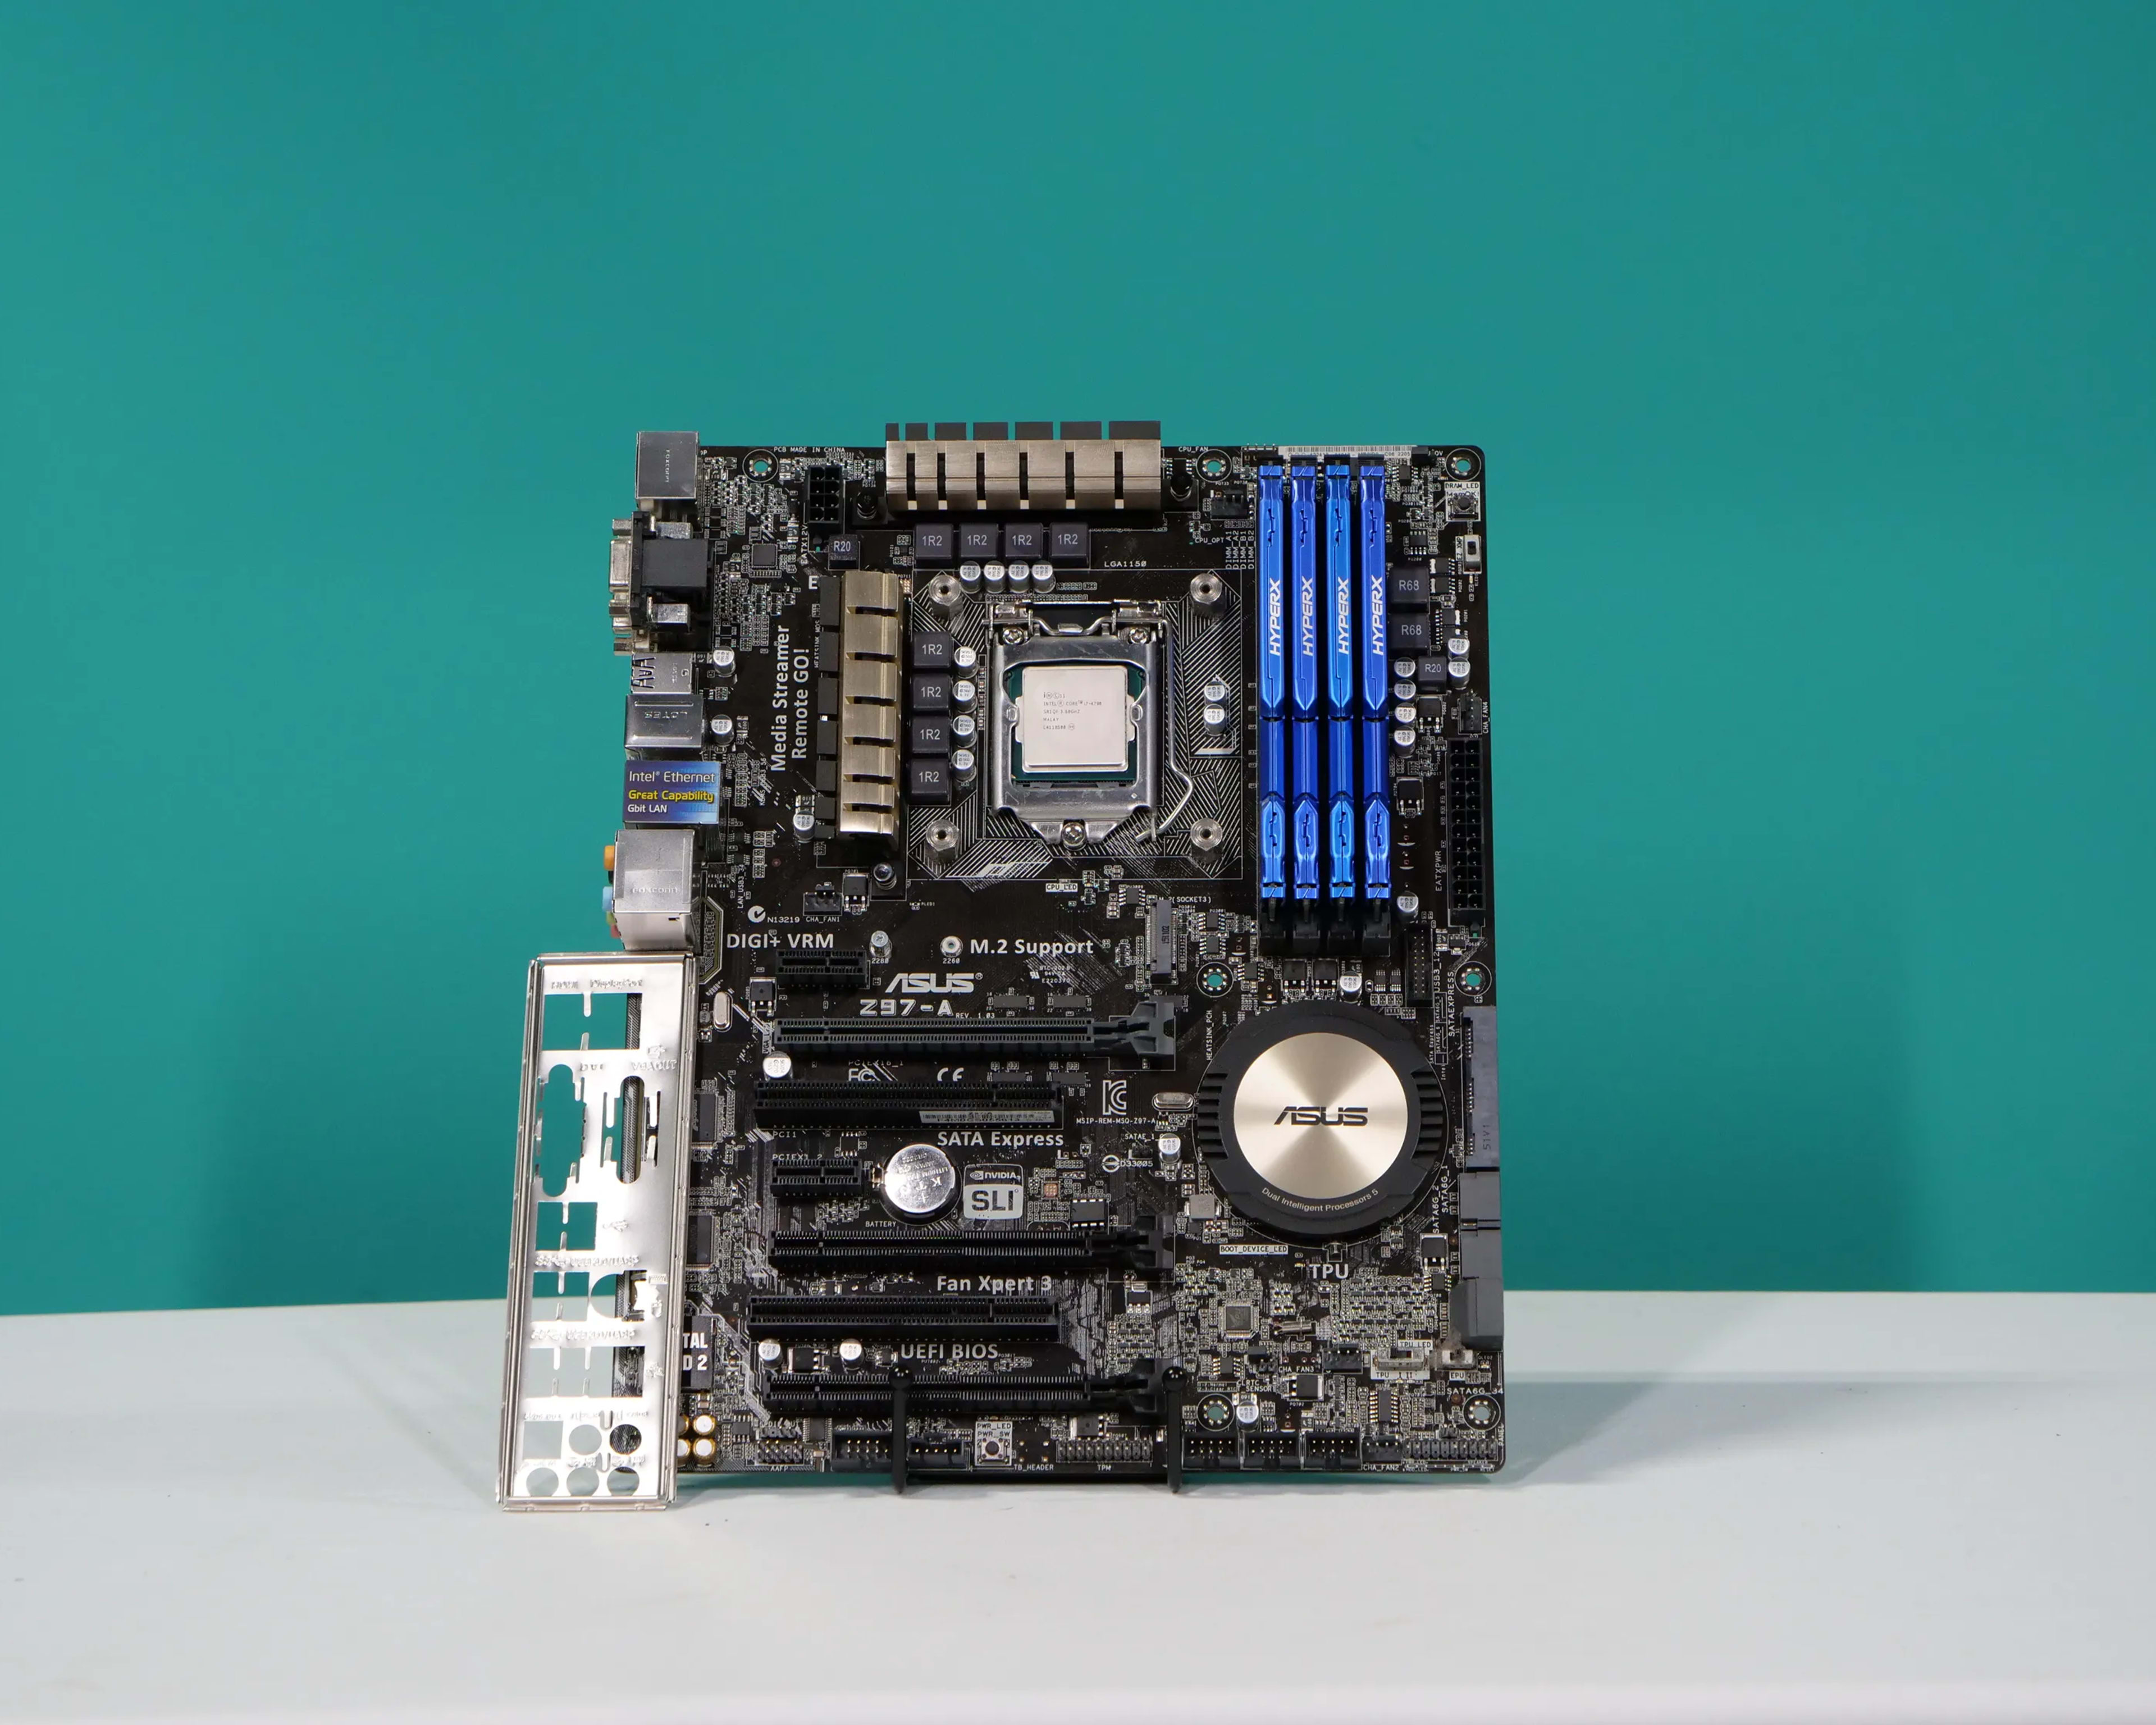 Asus Z97-A Motherboard Kit w/ i7-4790, 16gb ram, & Hyper 212 cooler!